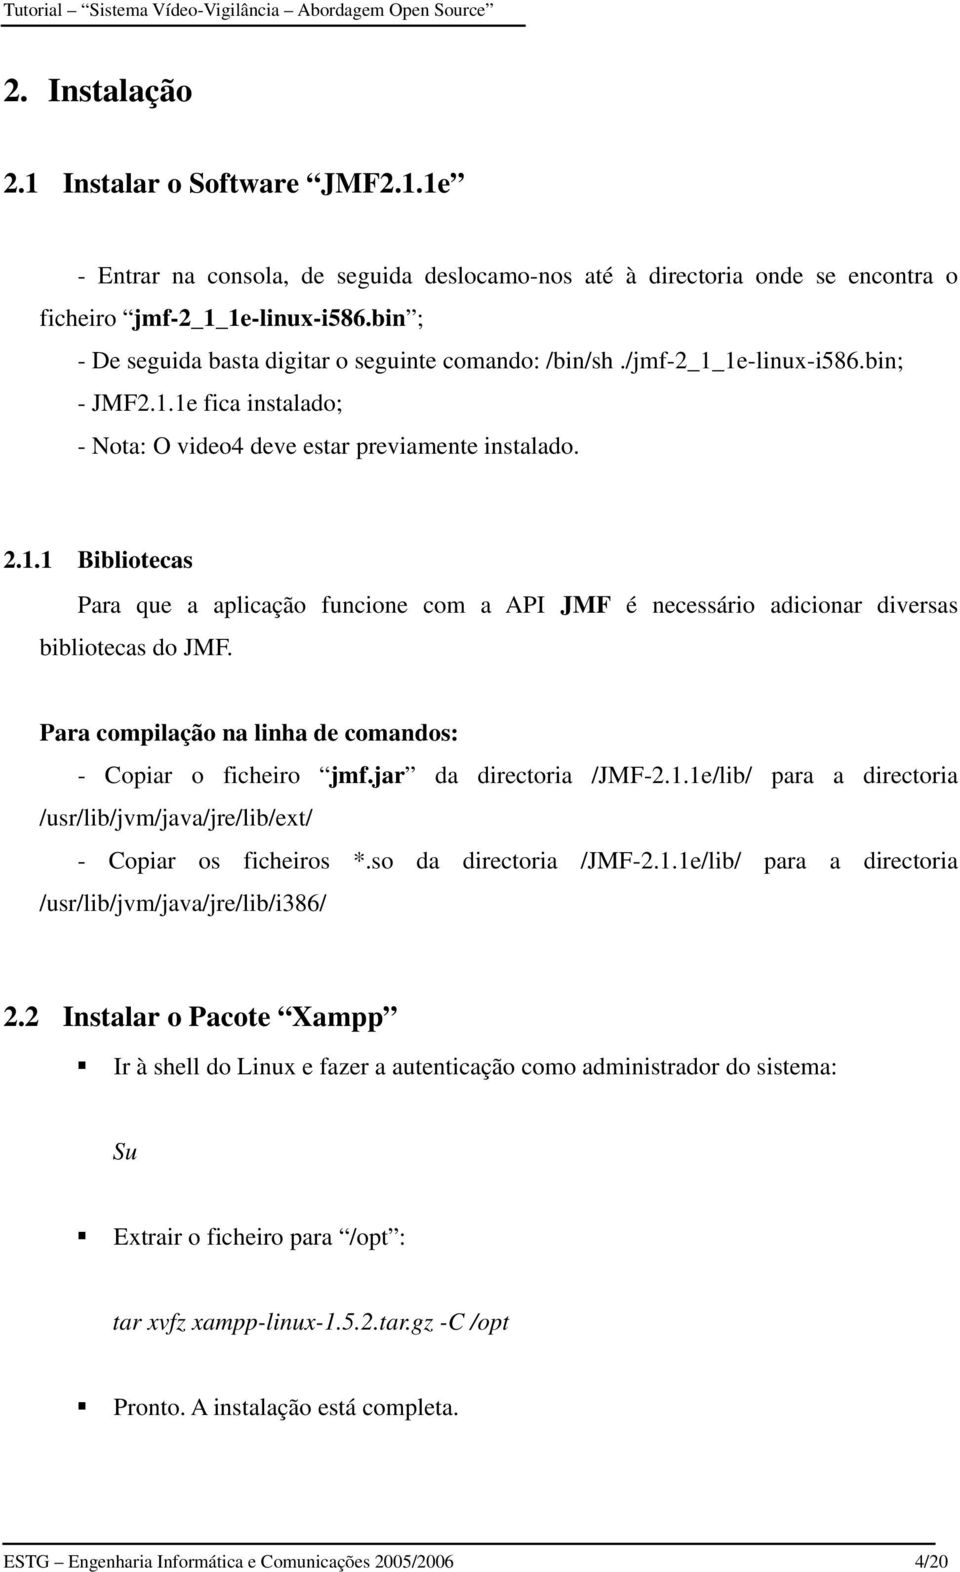 Para compilação na linha de comandos: - Copiar o ficheiro jmf.jar da directoria /JMF-2.1.1e/lib/ para a directoria /usr/lib/jvm/java/jre/lib/ext/ - Copiar os ficheiros *.so da directoria /JMF-2.1.1e/lib/ para a directoria /usr/lib/jvm/java/jre/lib/i386/ 2.